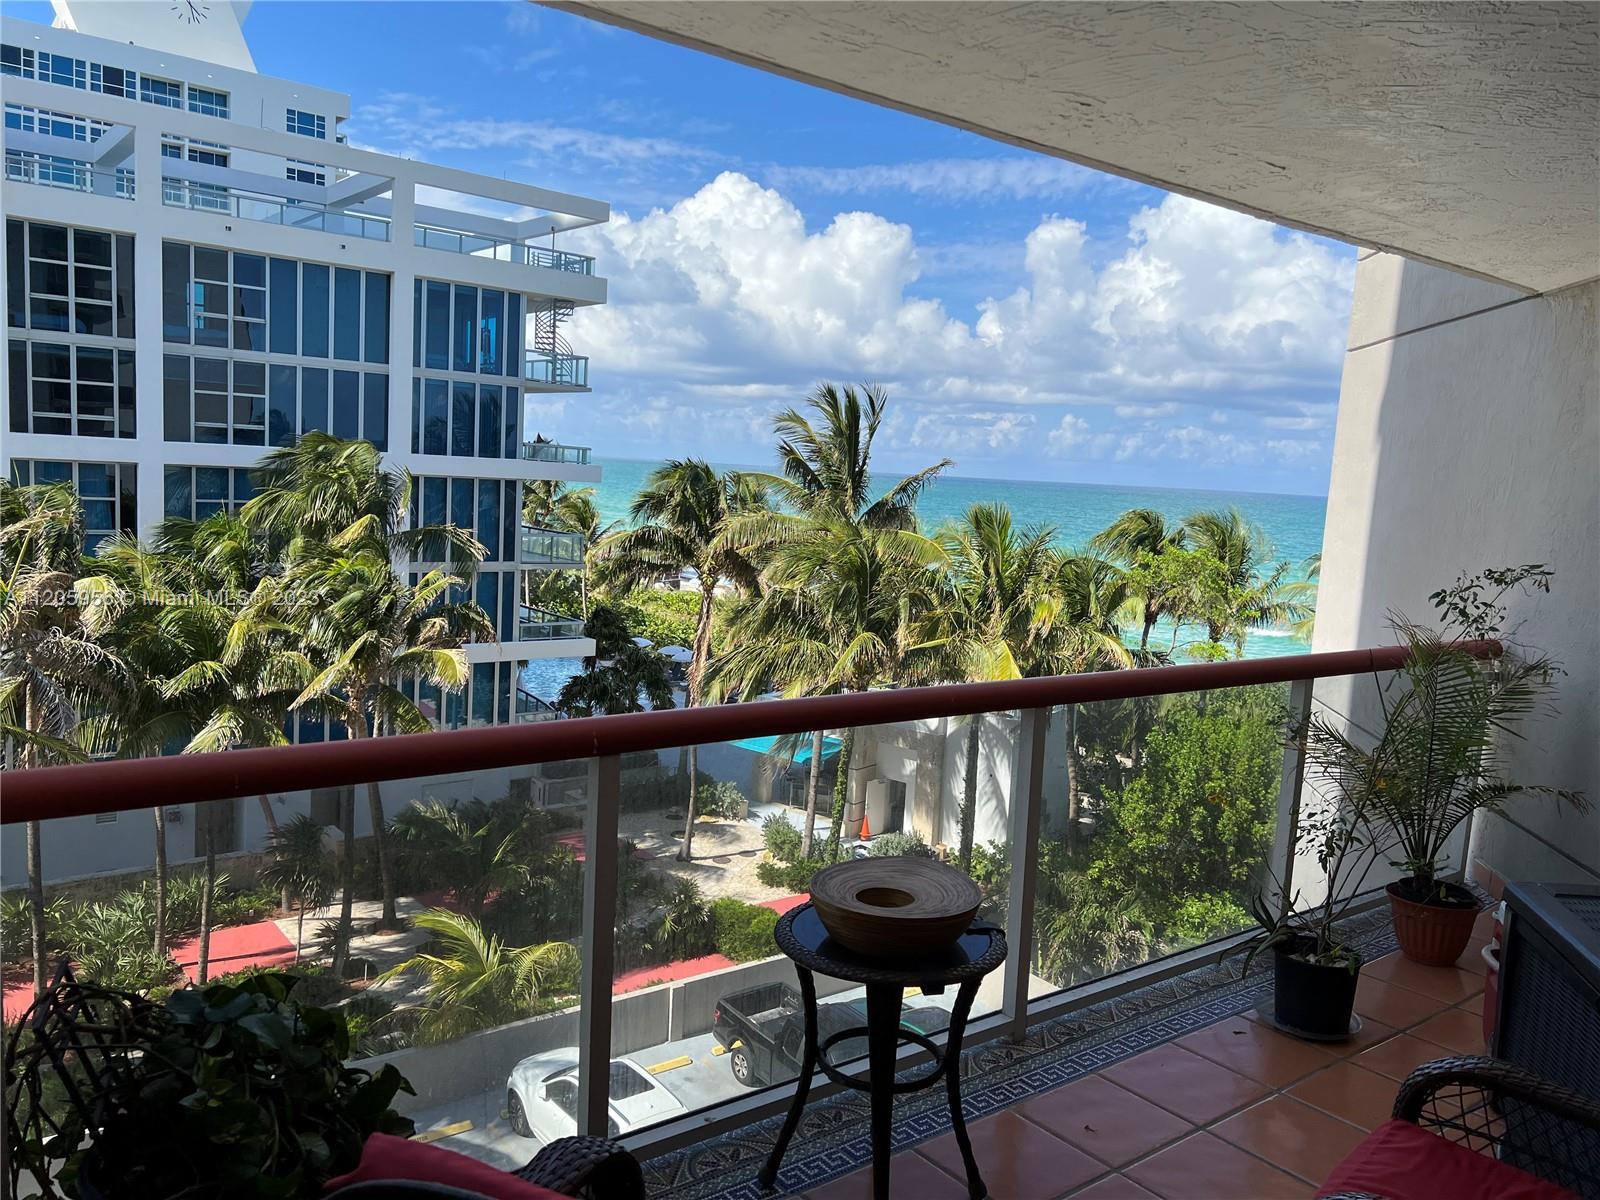 6767 Collins Ave unit 507 Miami Beach-balcony